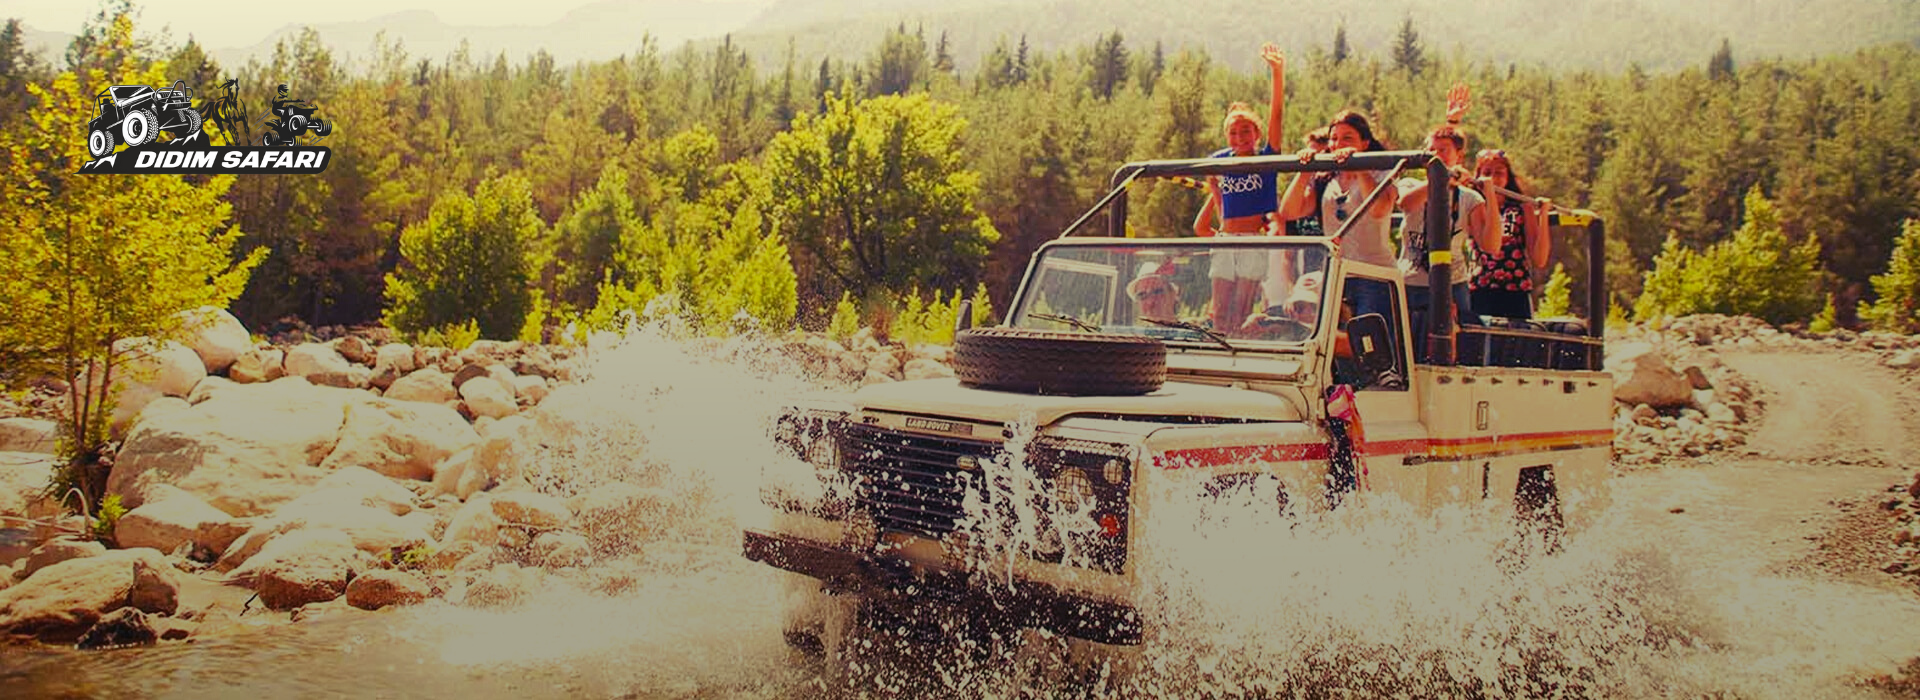 Didim tatilinizde adrenalin dolu saf macera mı arıyorsunuz? Didim Jeep Safari macerası sizi bekliyor.